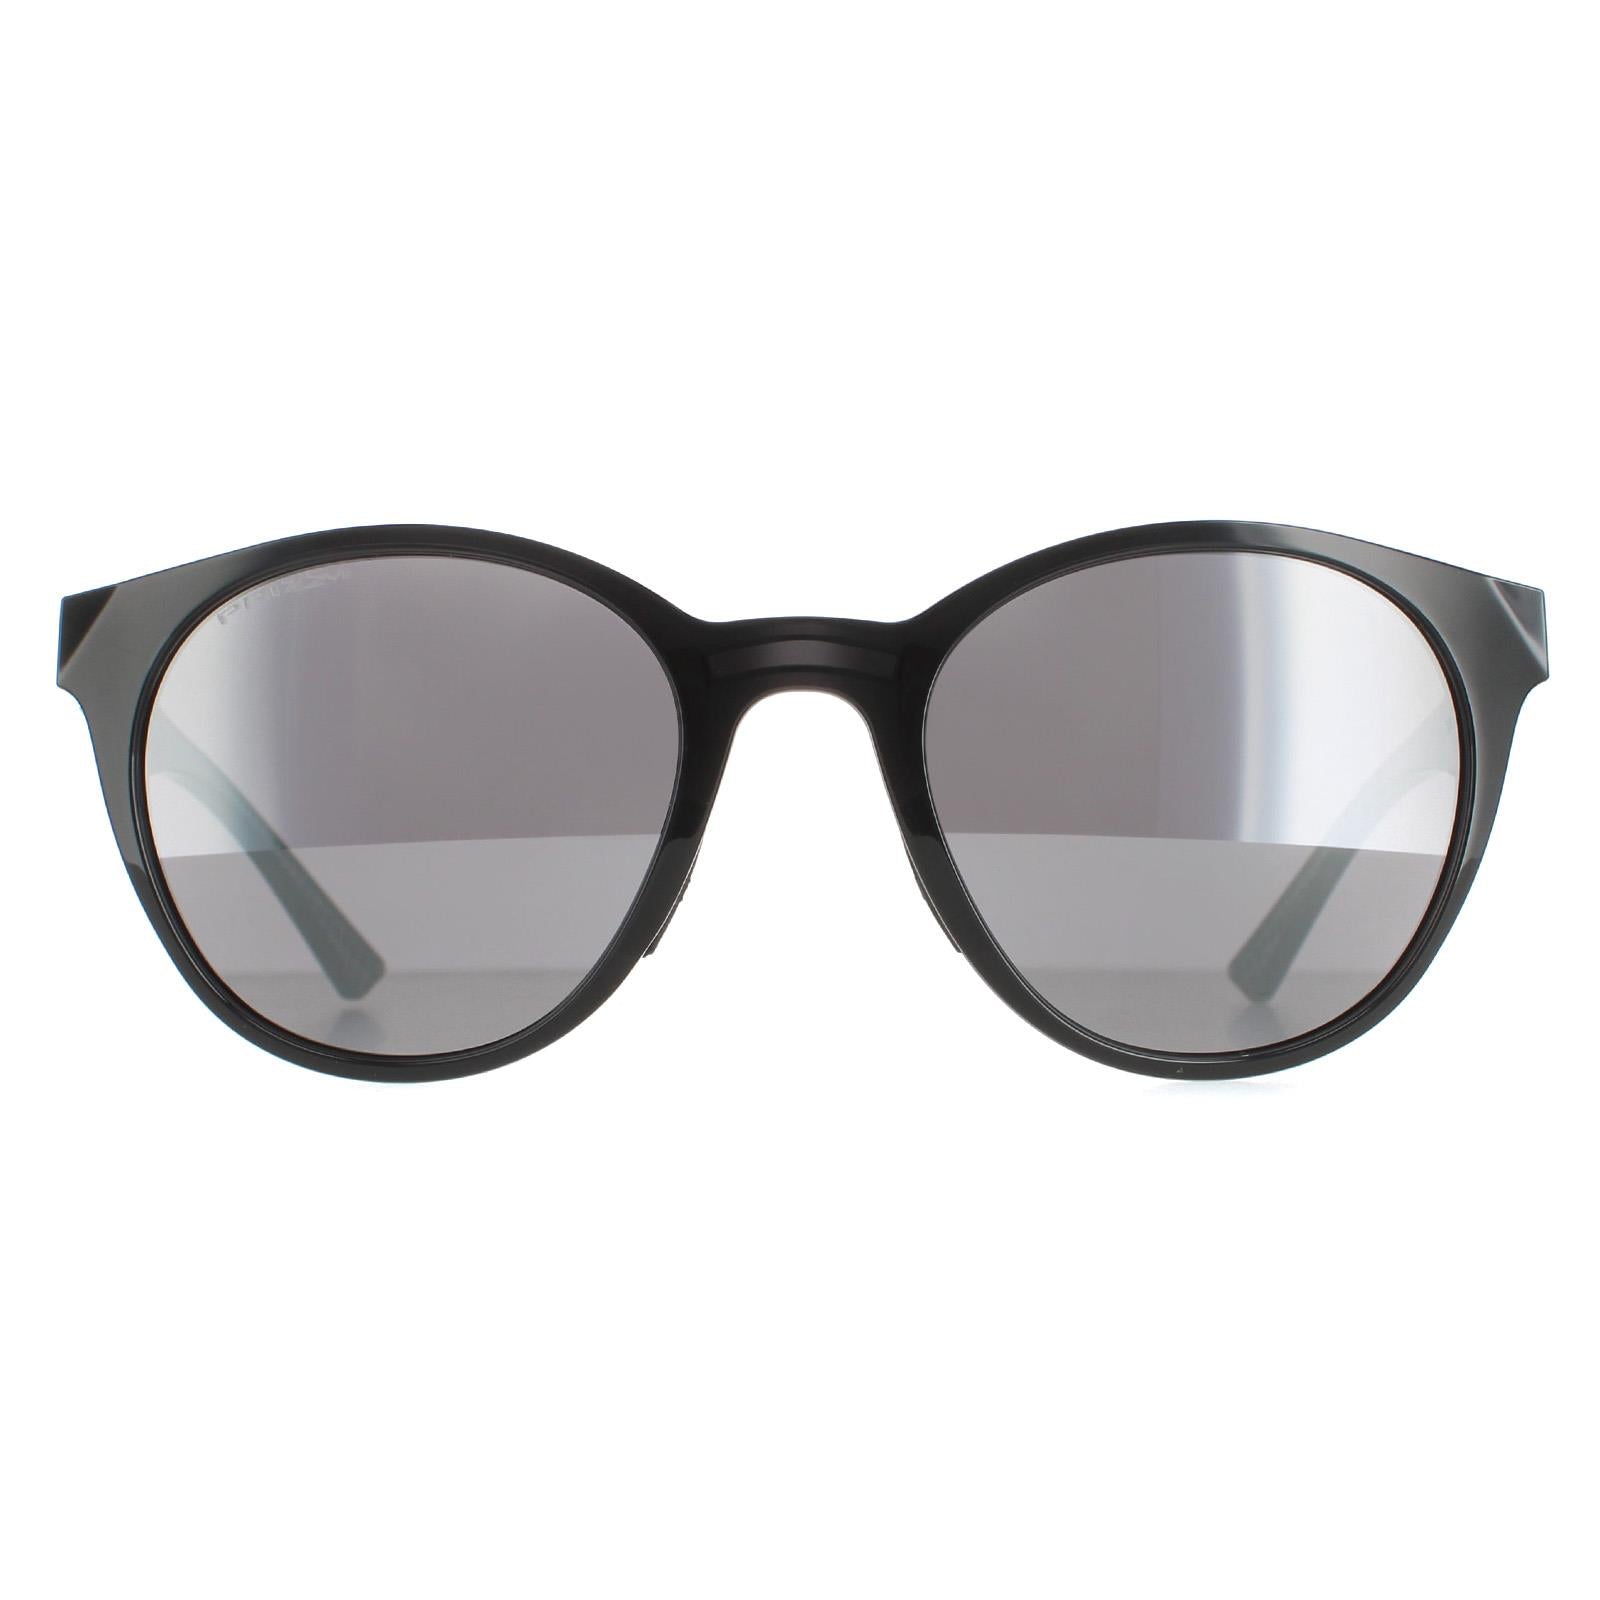 Oakley Sunglasses & Safety Glasses - Safety Glasses USA